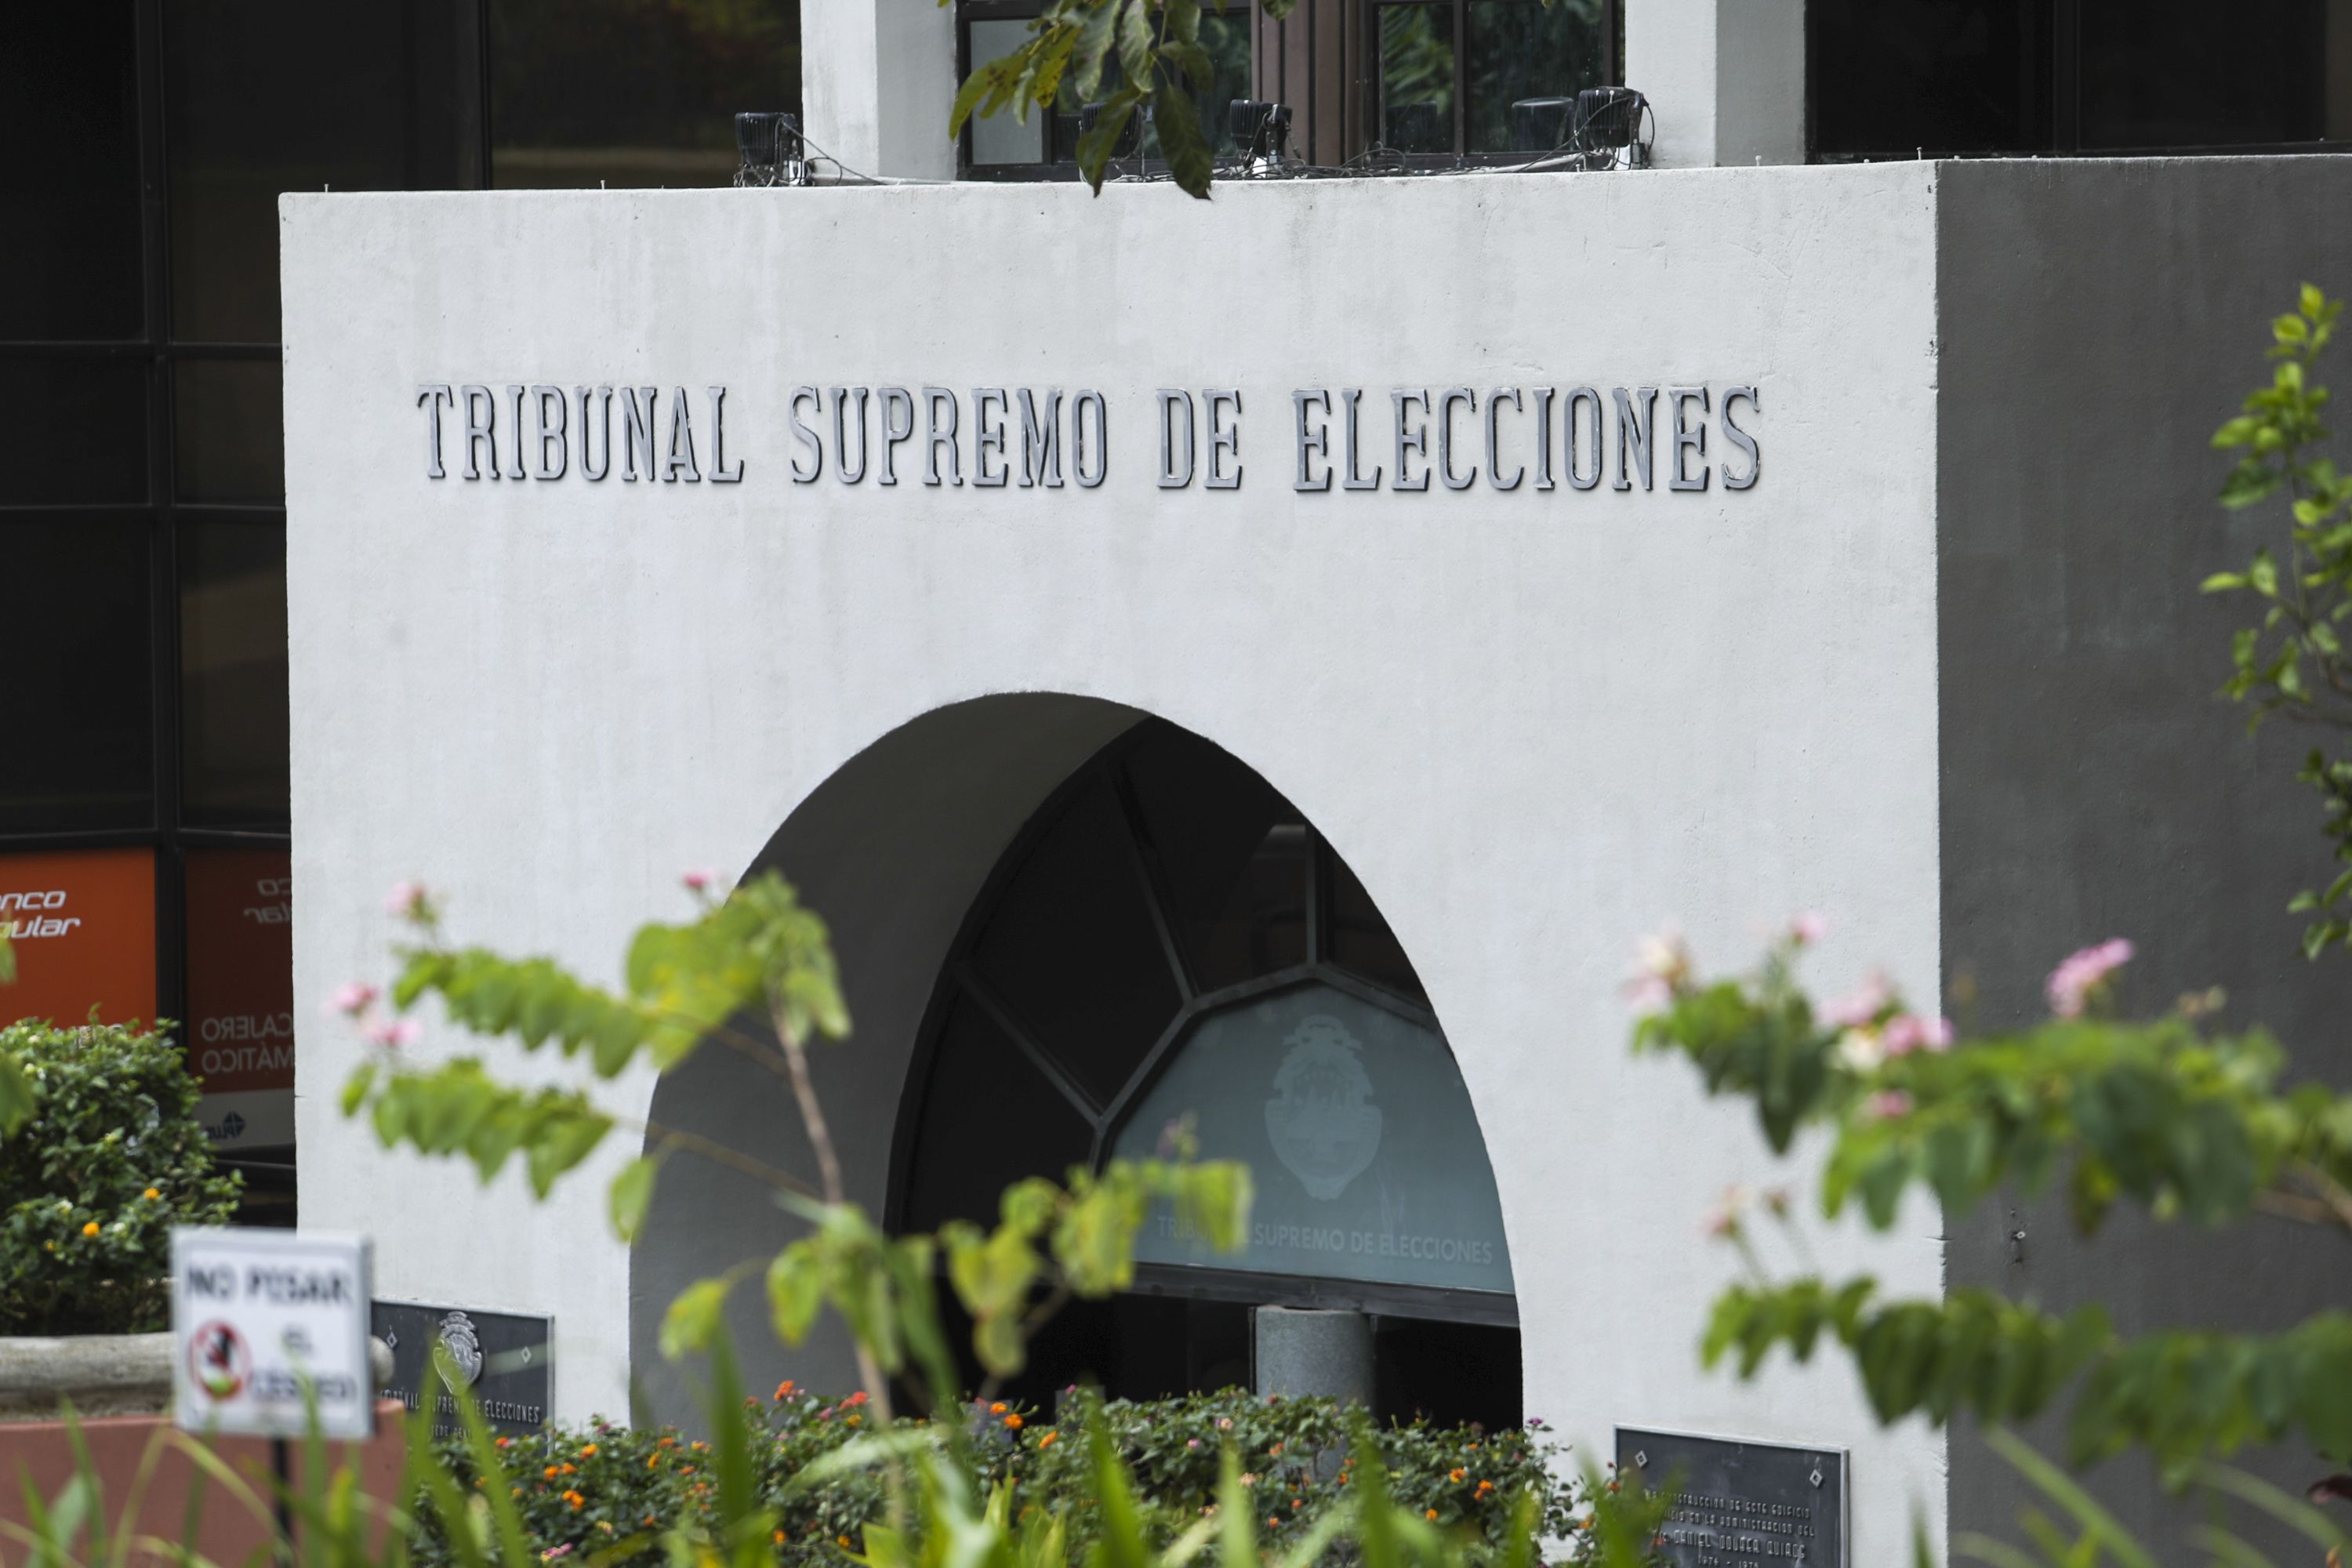 El miércoles 26 de junio, el Tribunal Supremo de Elecciones (TSE) planteó una consulta facultativa de constitucionalidad sobre algunos artículos de la denominada “ley Jaguar”, que el Poder Ejecutivo desea someter a referéndum.